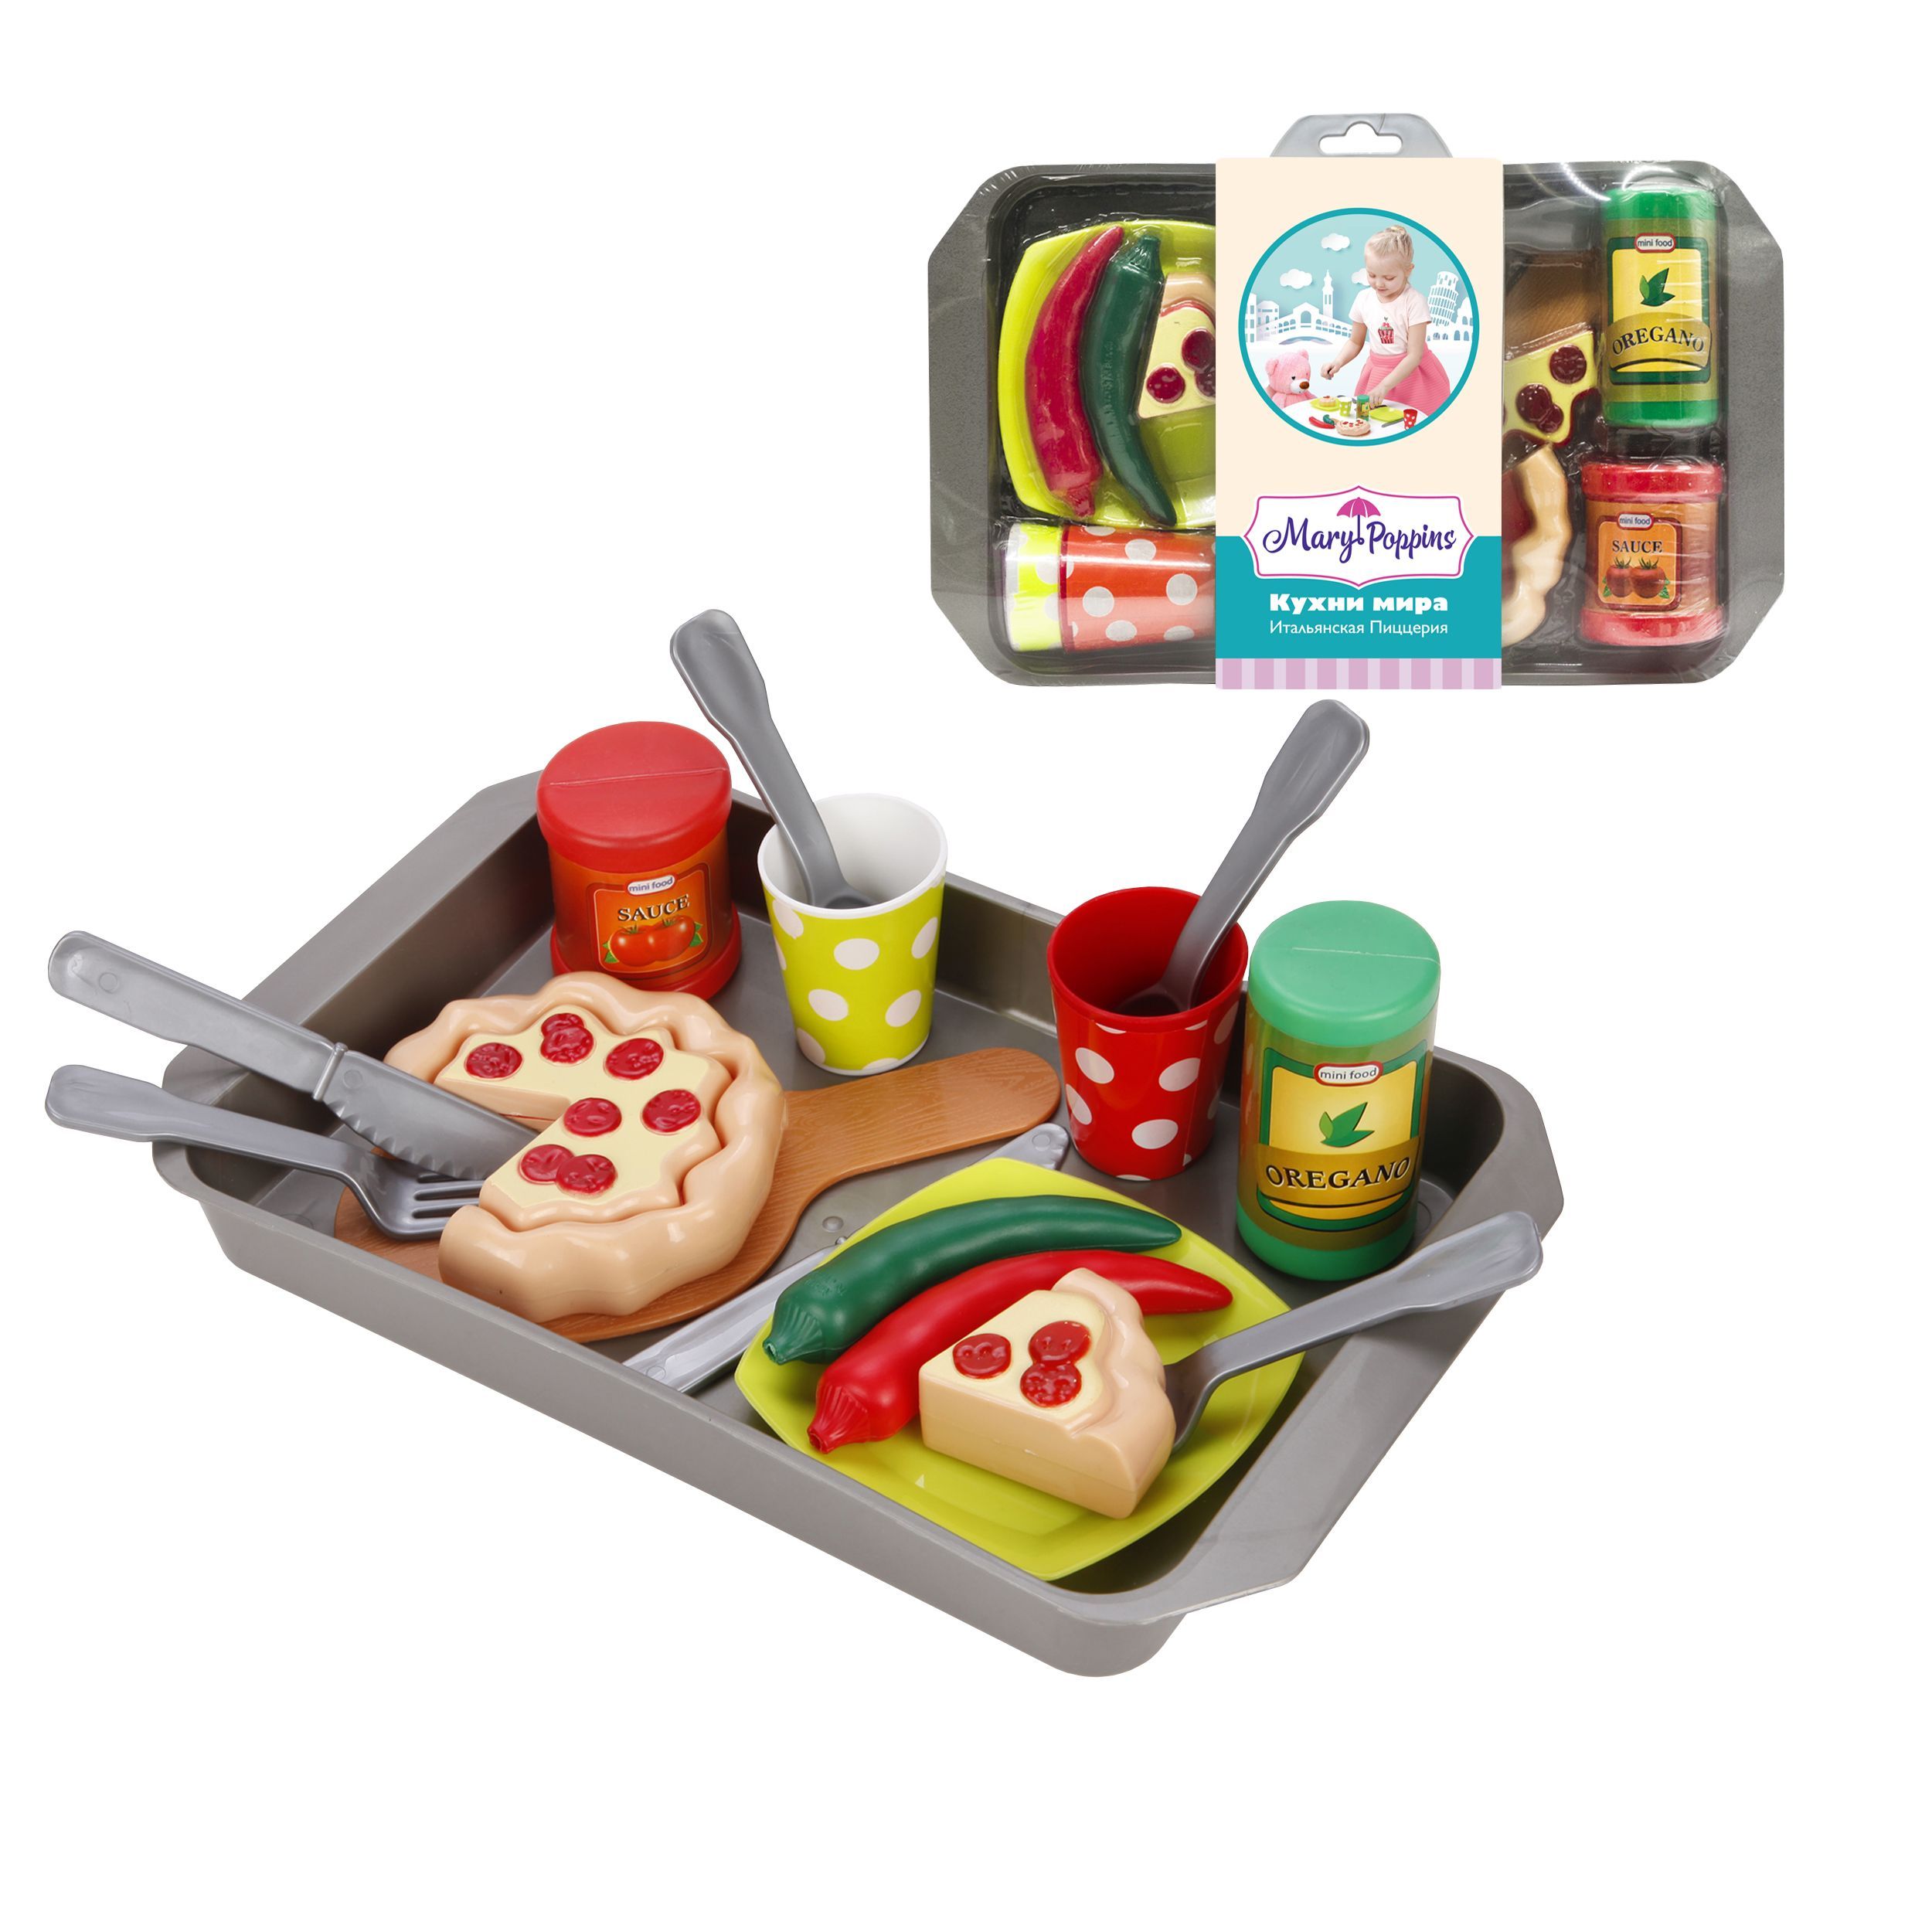 Набор детских продуктов. Набор посуды и продуктов итальянская пиццерия 453140. Игрушечная посуда Mary Poppins. Игрушечные продукты.